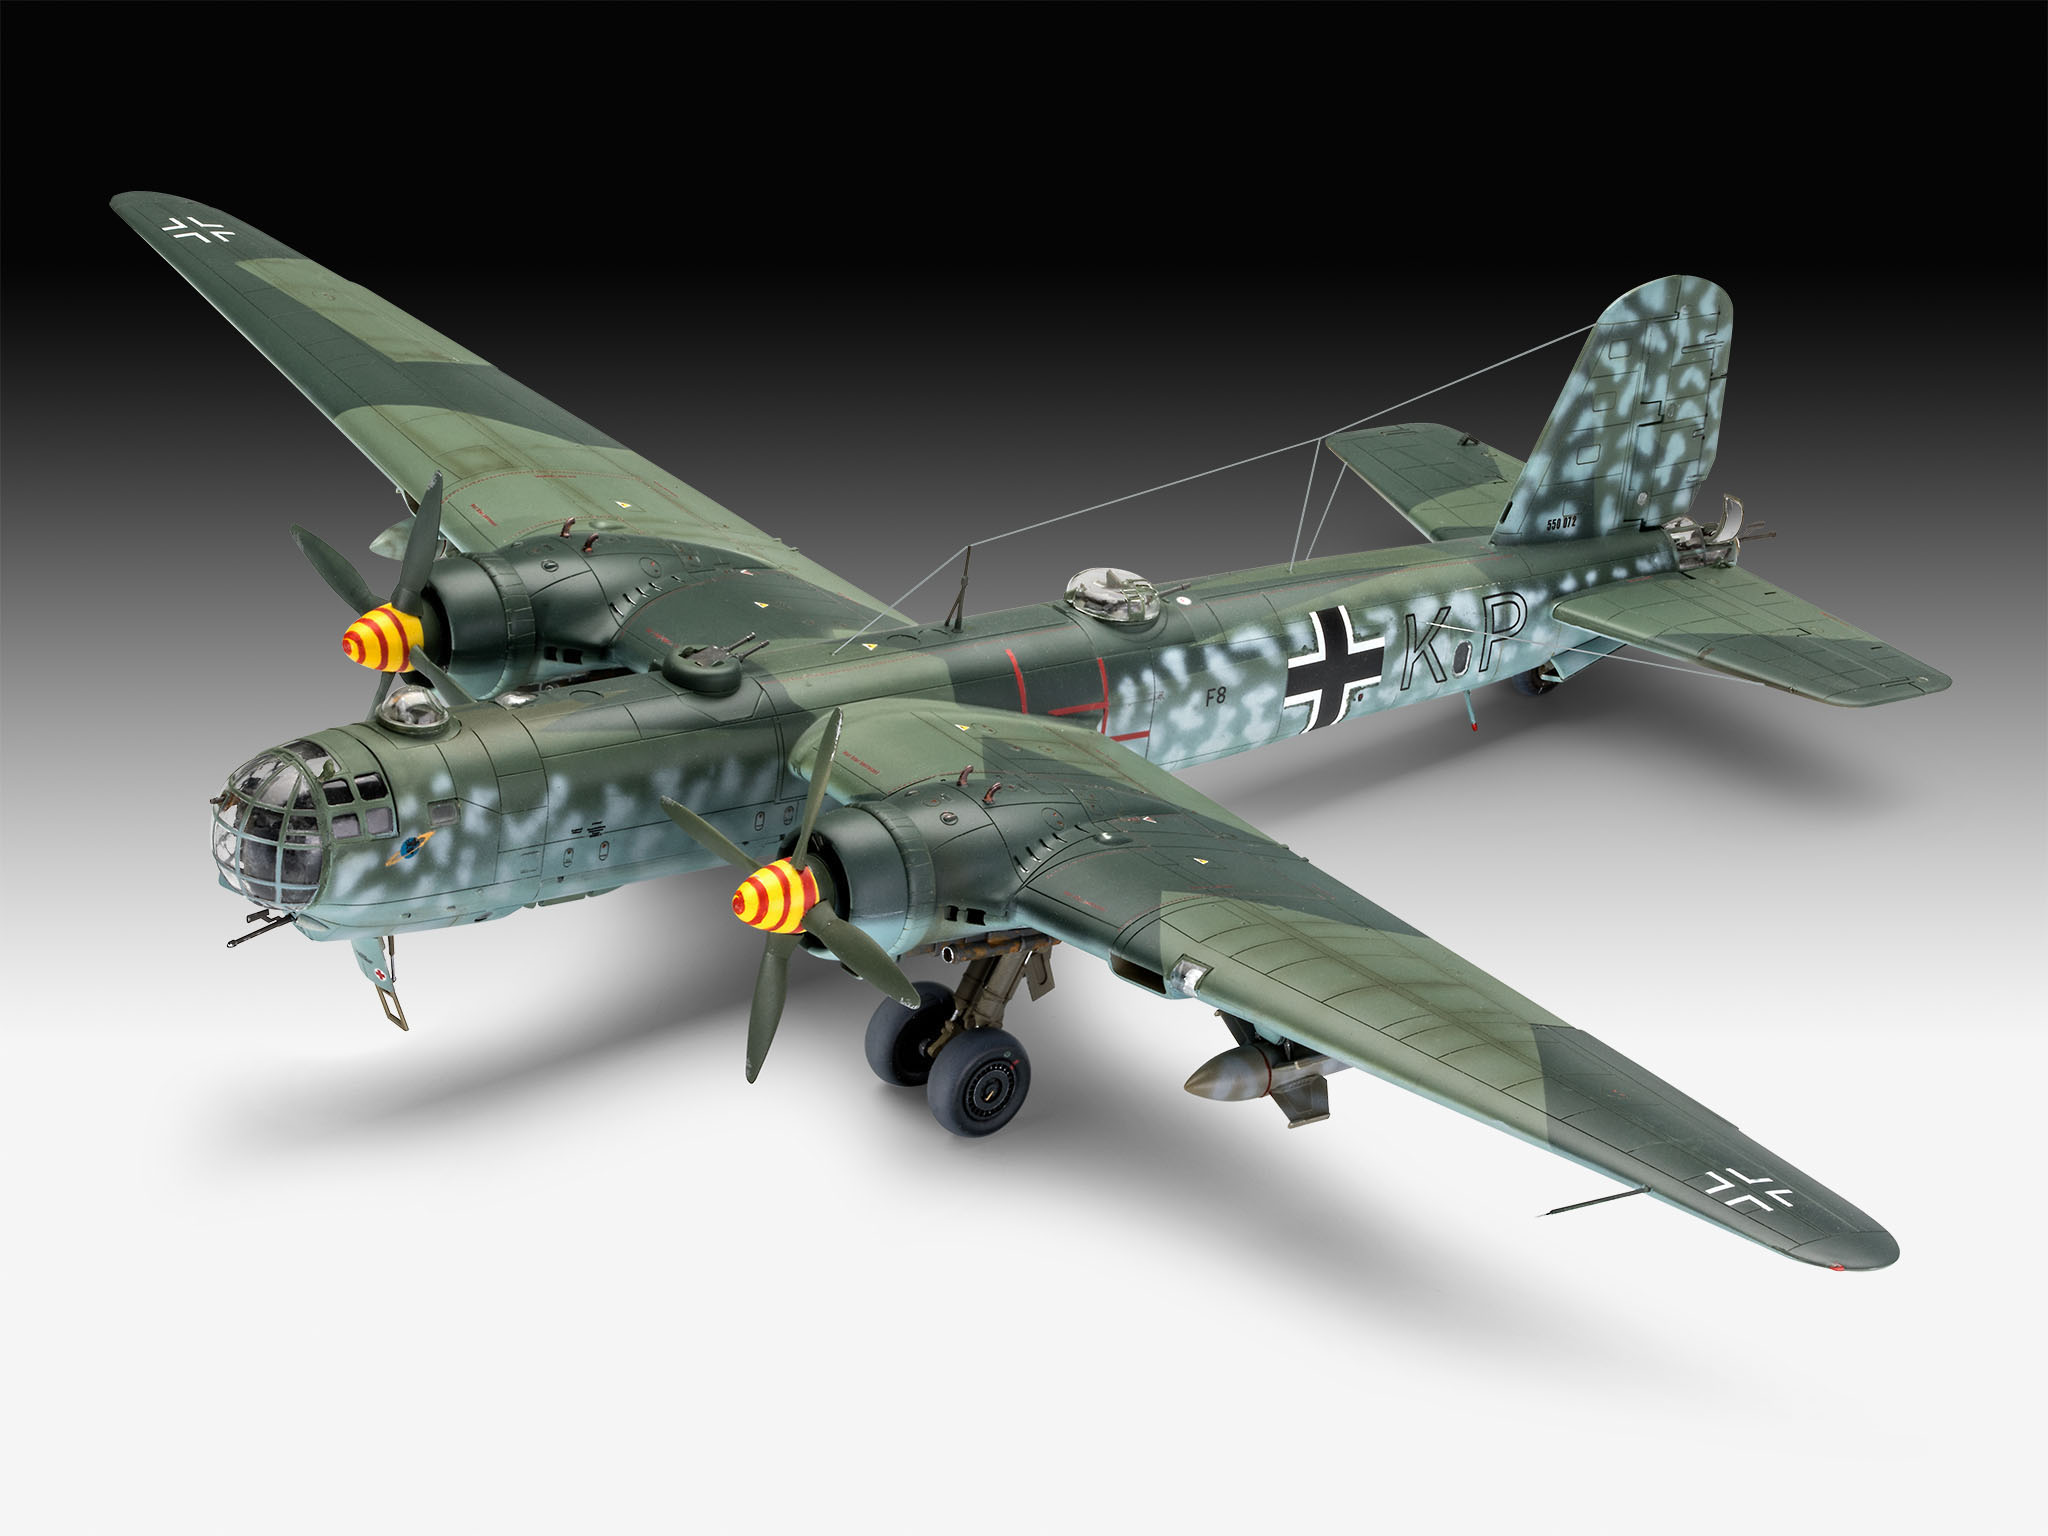 A-5 HE177 Heinkel Mehrfarbig Bausatz, REVELL Greif